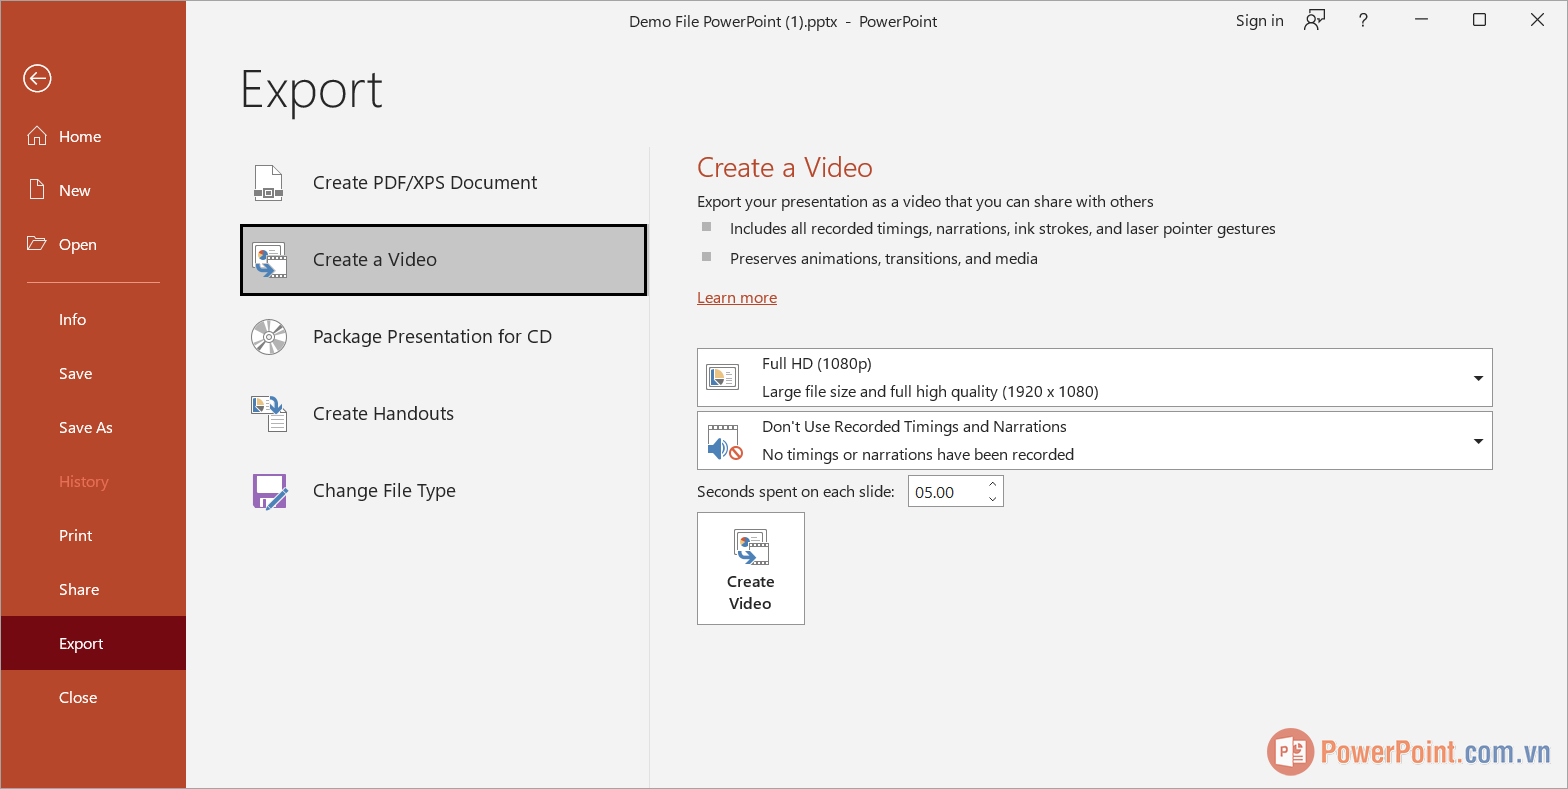 Chọn Create a Video để xuất bản file PowerPoint thành video